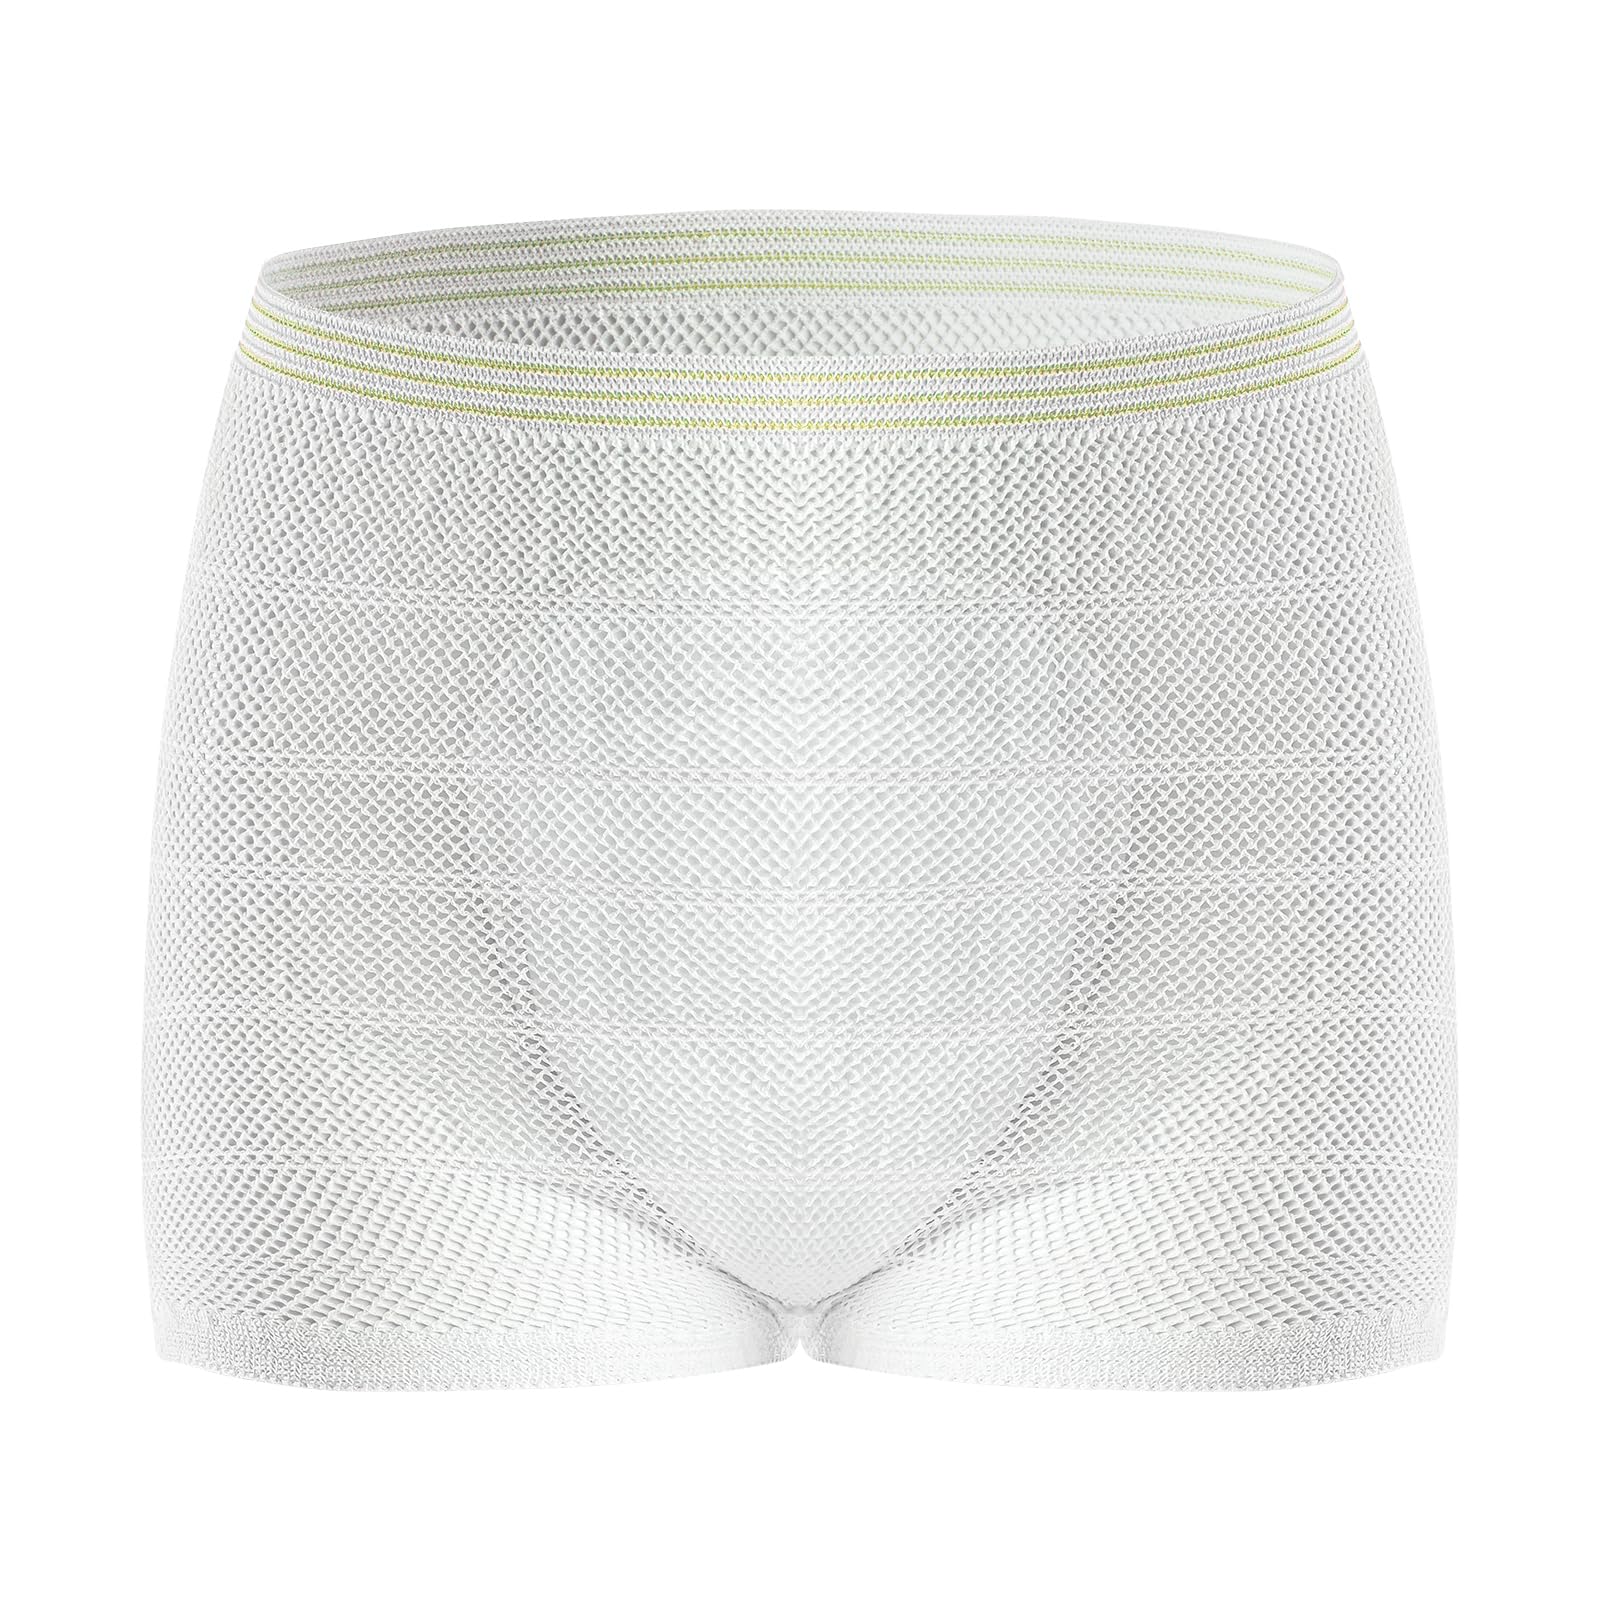 HANSILK Seamless Mesh Postpartum Underwear Natural C-Section